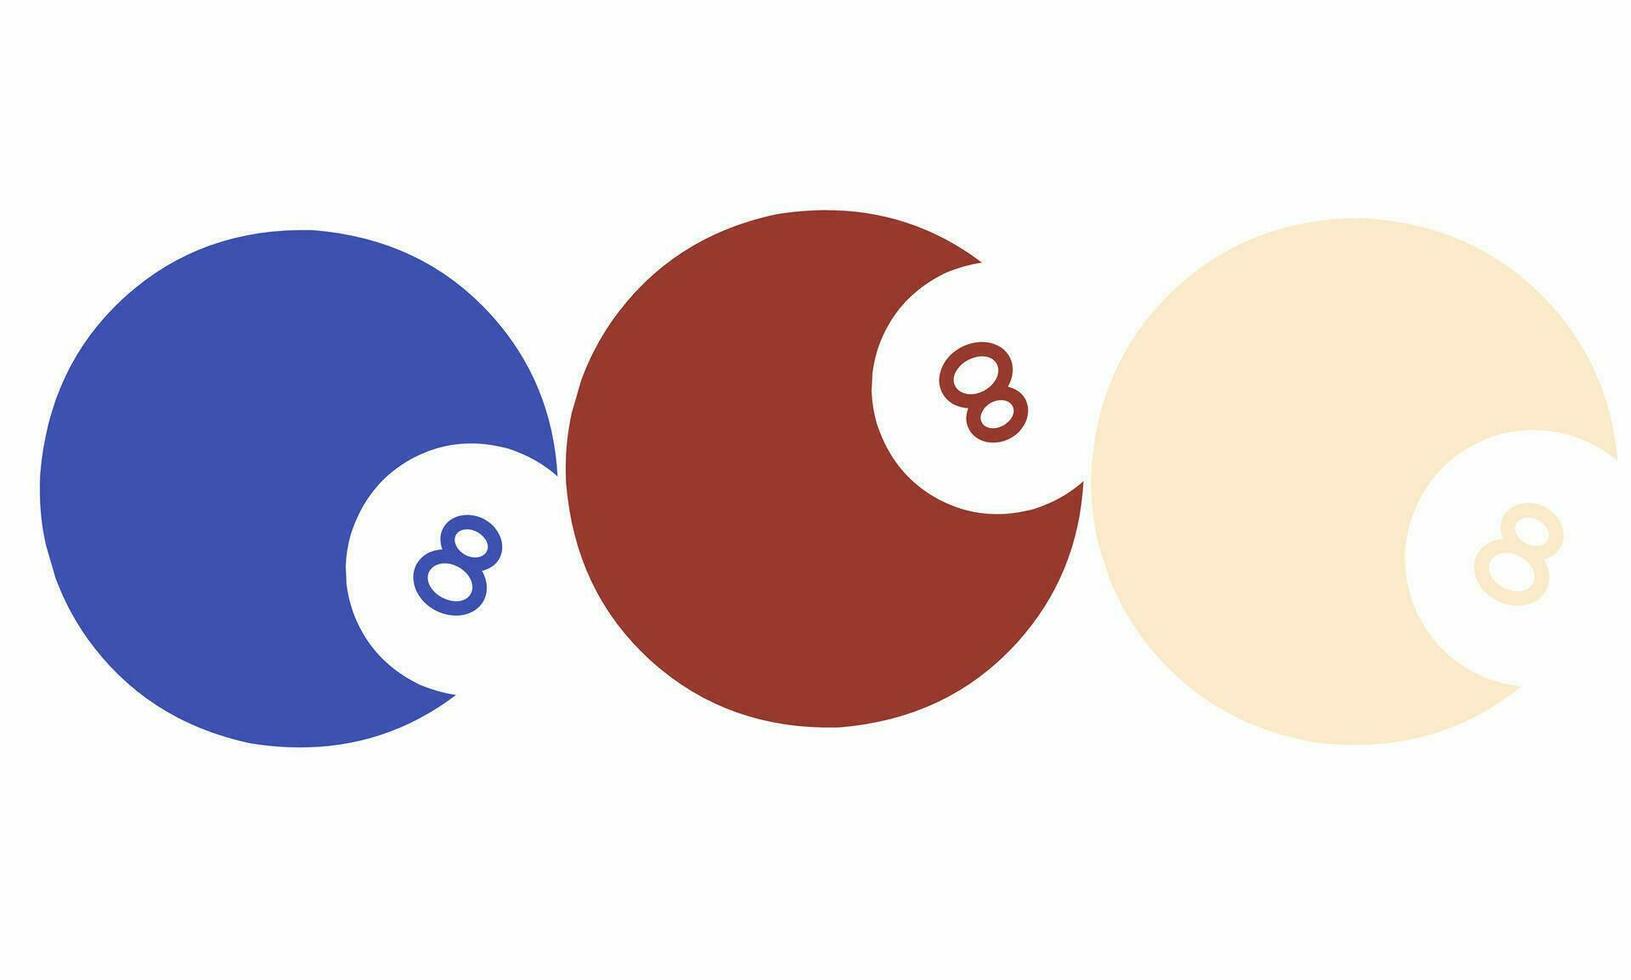 8 ball poll icon set simple concept vector logo